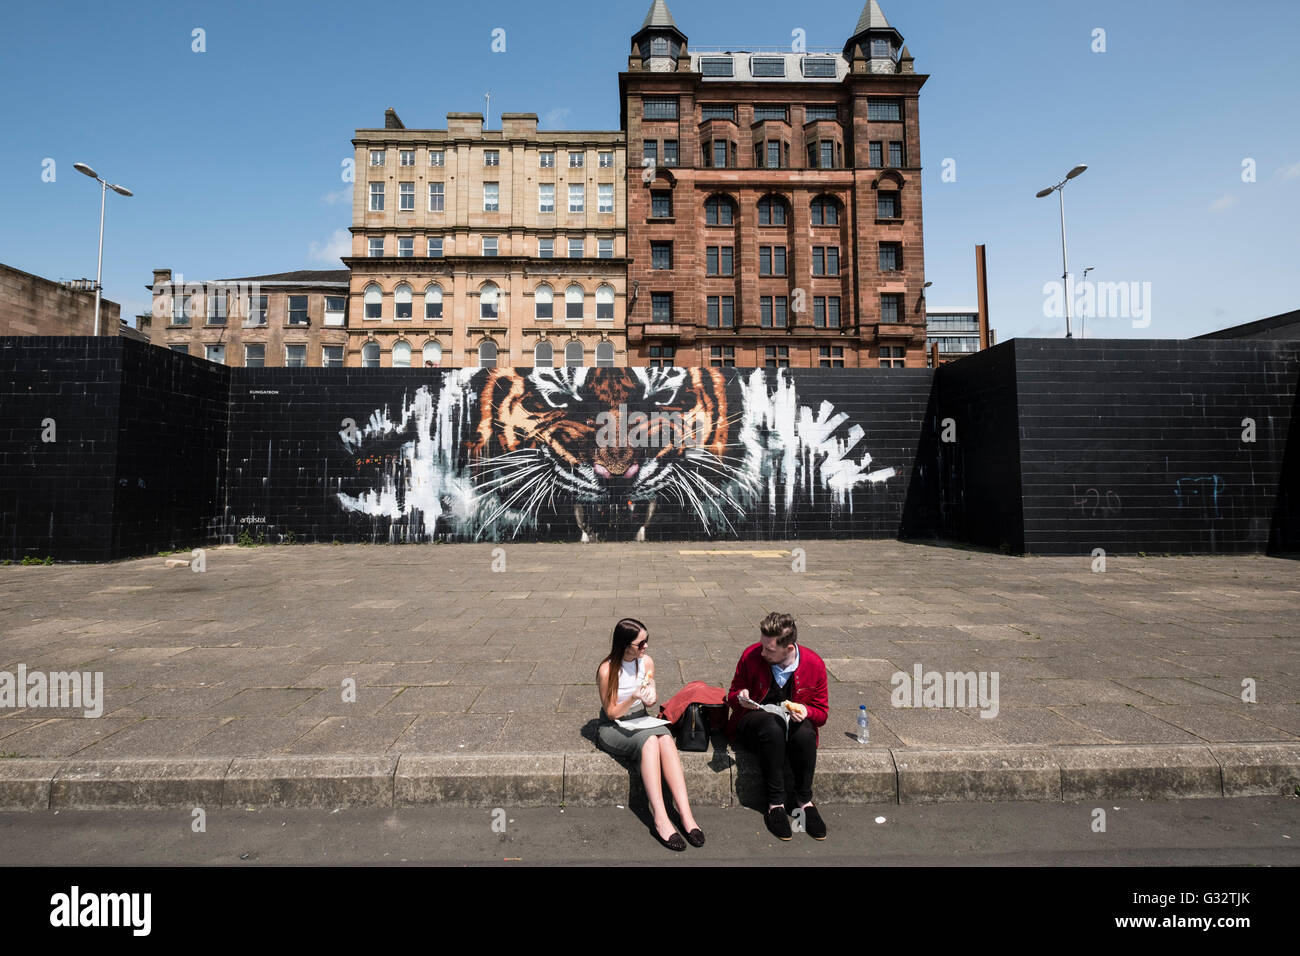 Tiger street art Mural en la pared en el centro de Glasgow, Escocia, Reino Unido Foto de stock